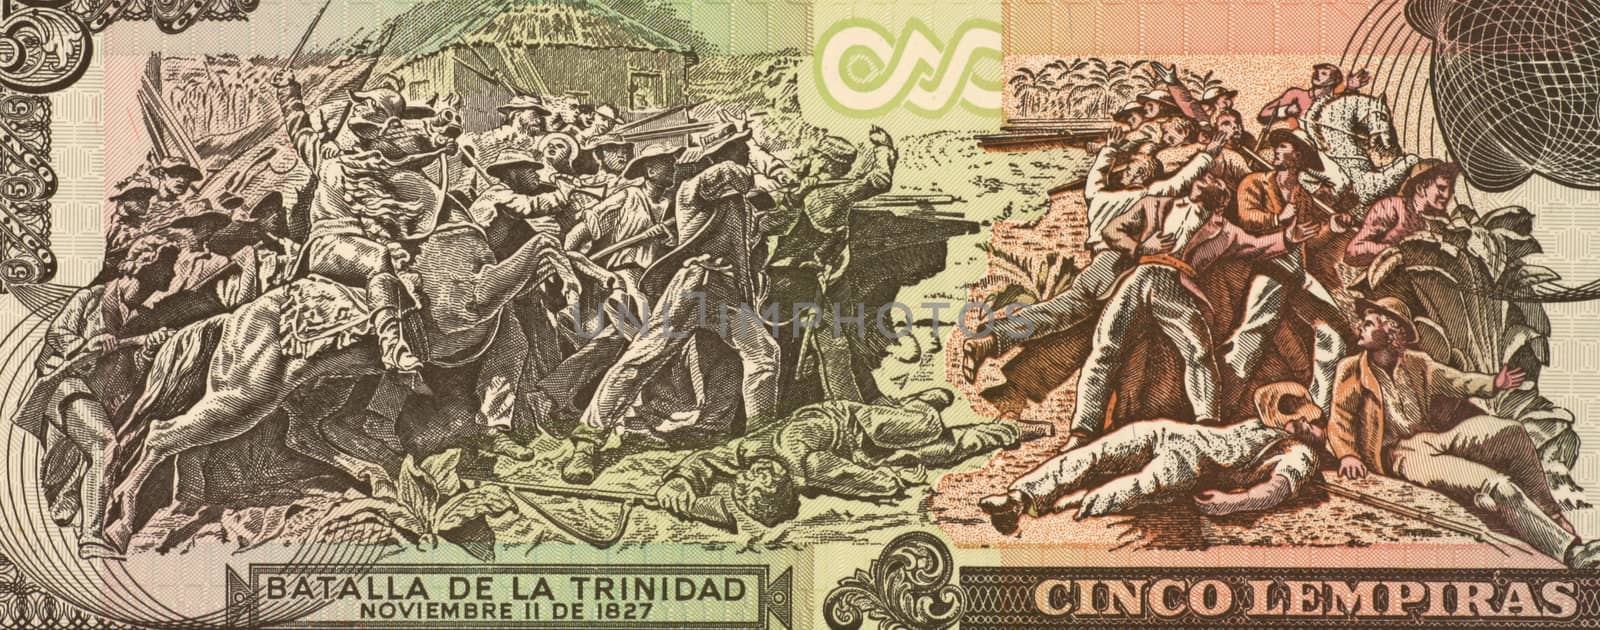 Battle of La Trinidad on 5 Lempiras 2004 Banknote from Honduras.